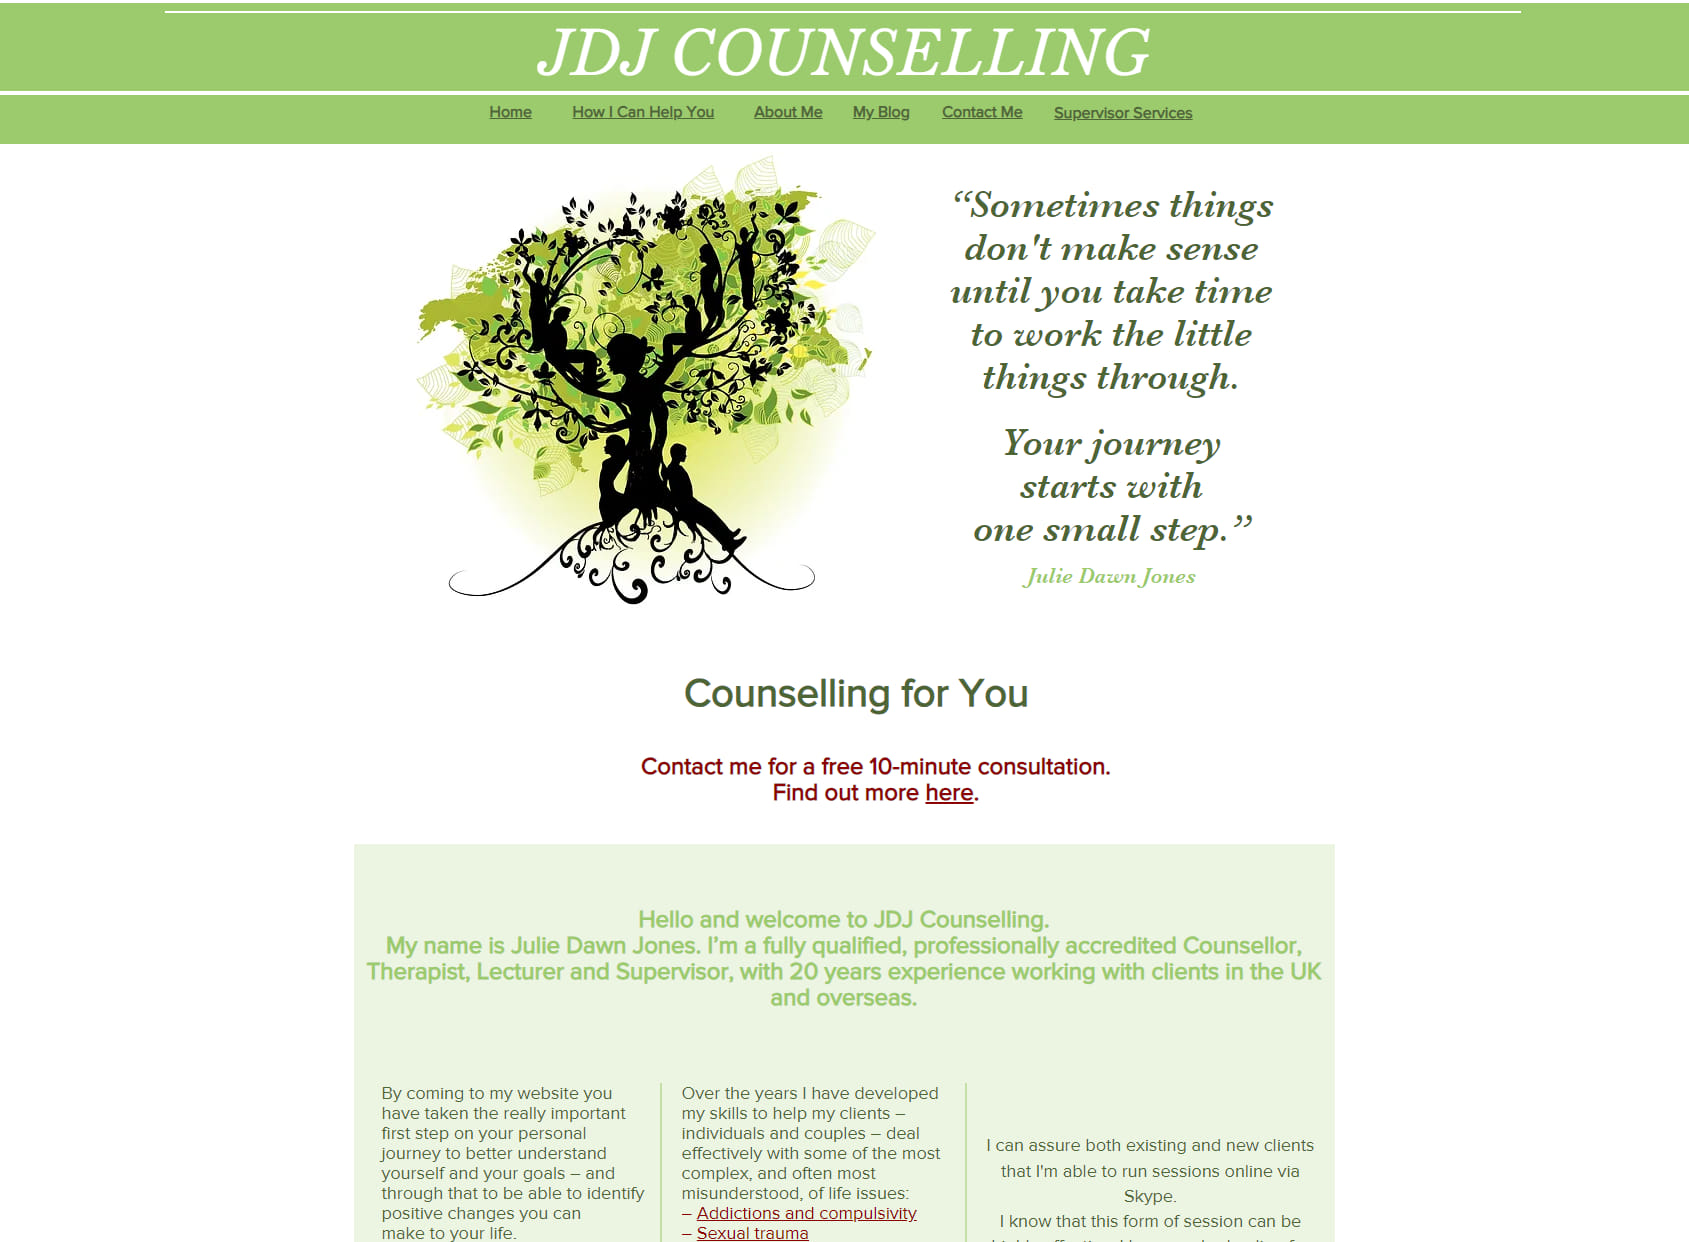 JDJ Counselling